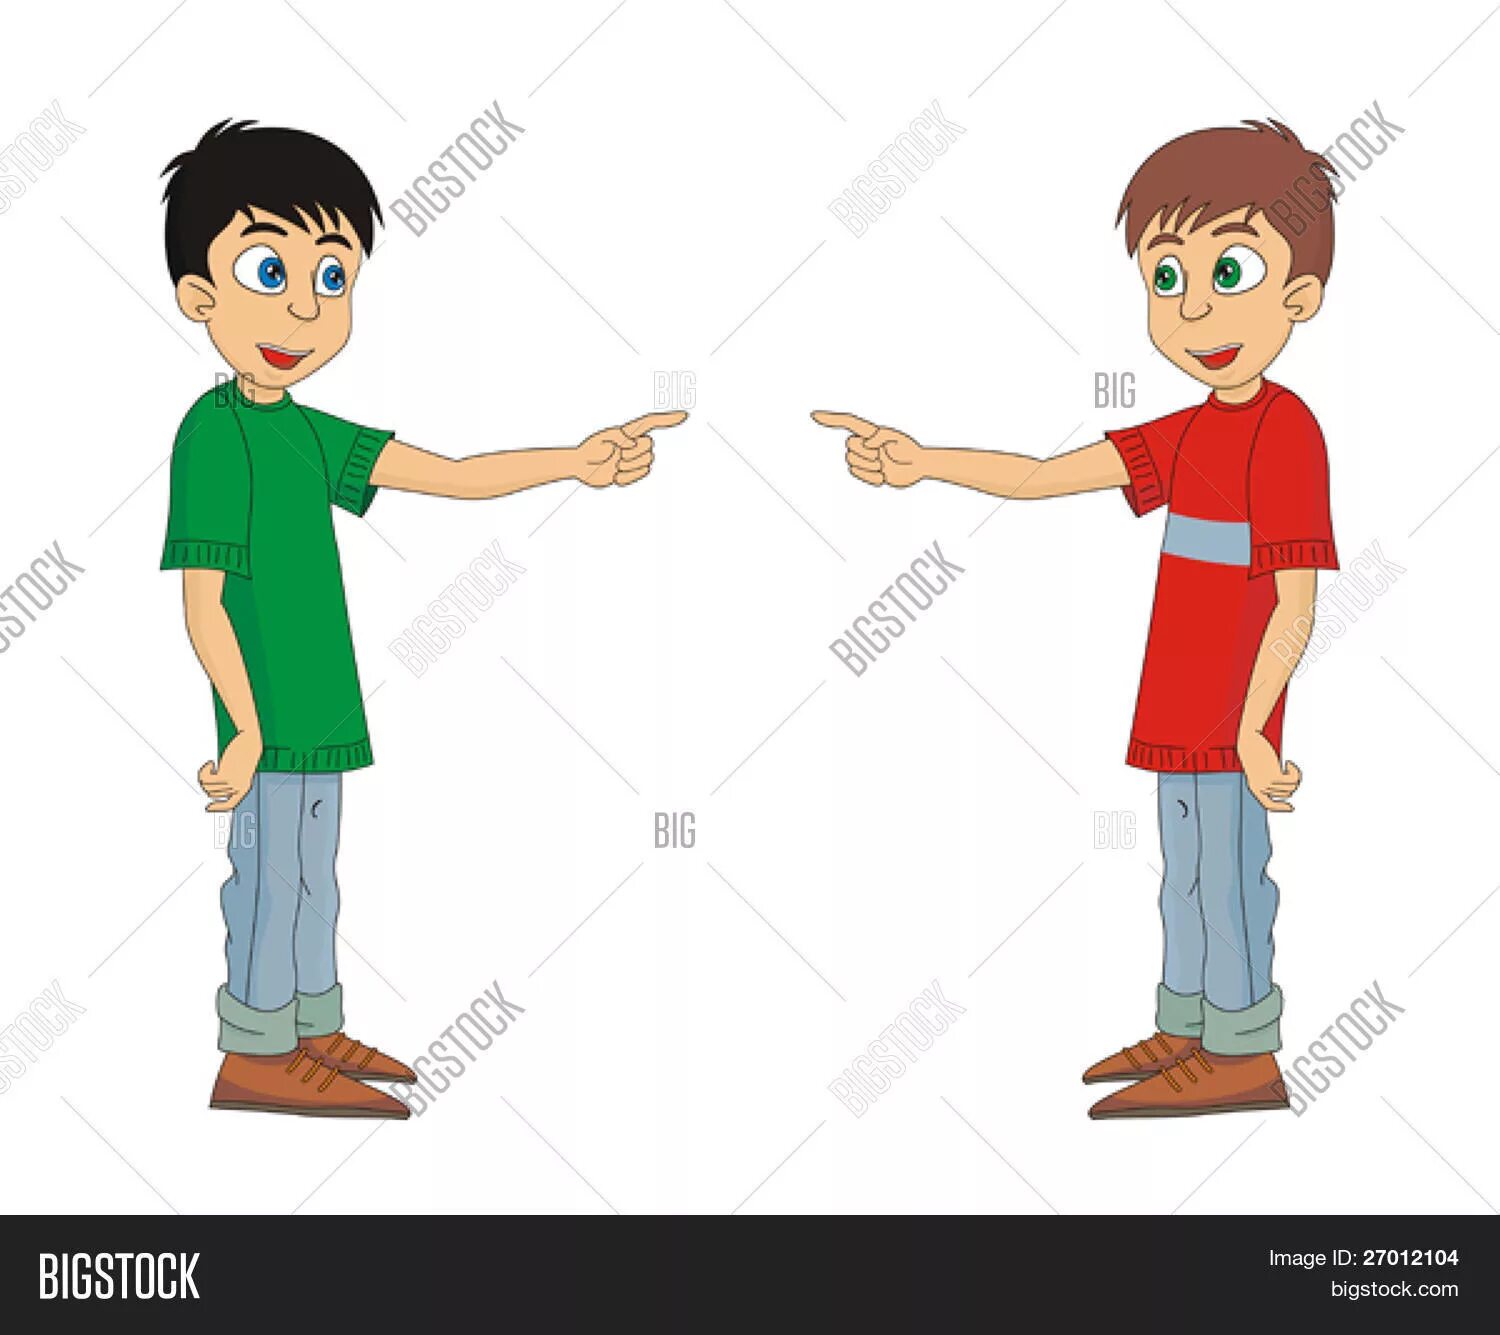 Два человека указывают друг на друга. Мальчик указывает на rfhnbyrf. Мальчик указывает на себя. Мальчик показывает другу. Детя стоят друг напротив друга.